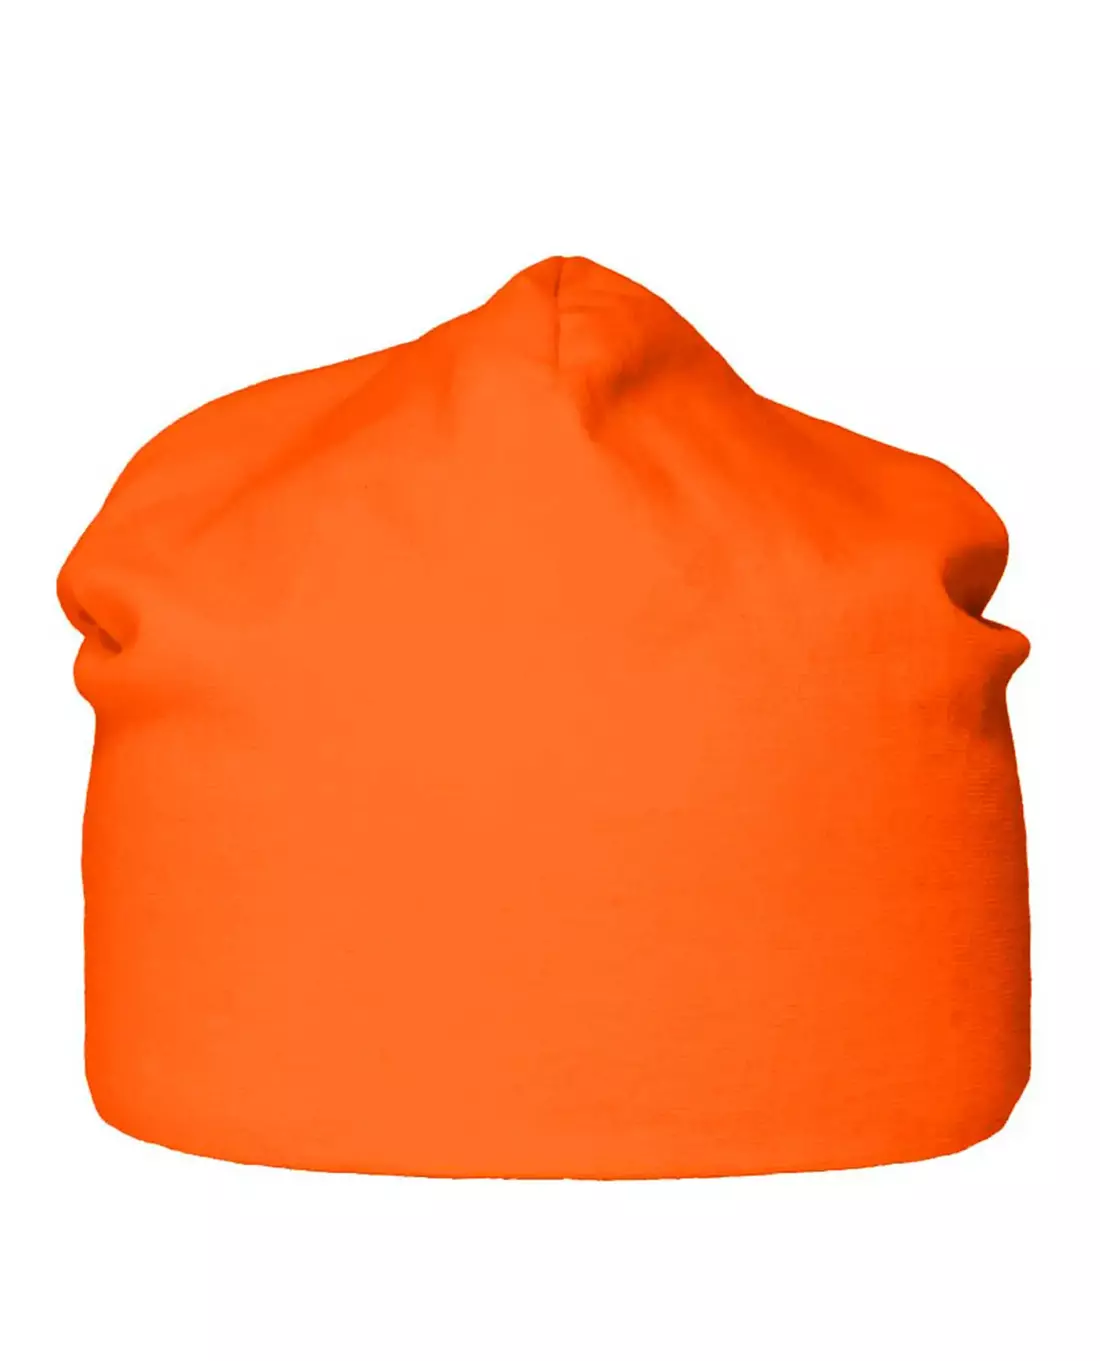 Puijo pipo MEDIUM (24 cm), Orange